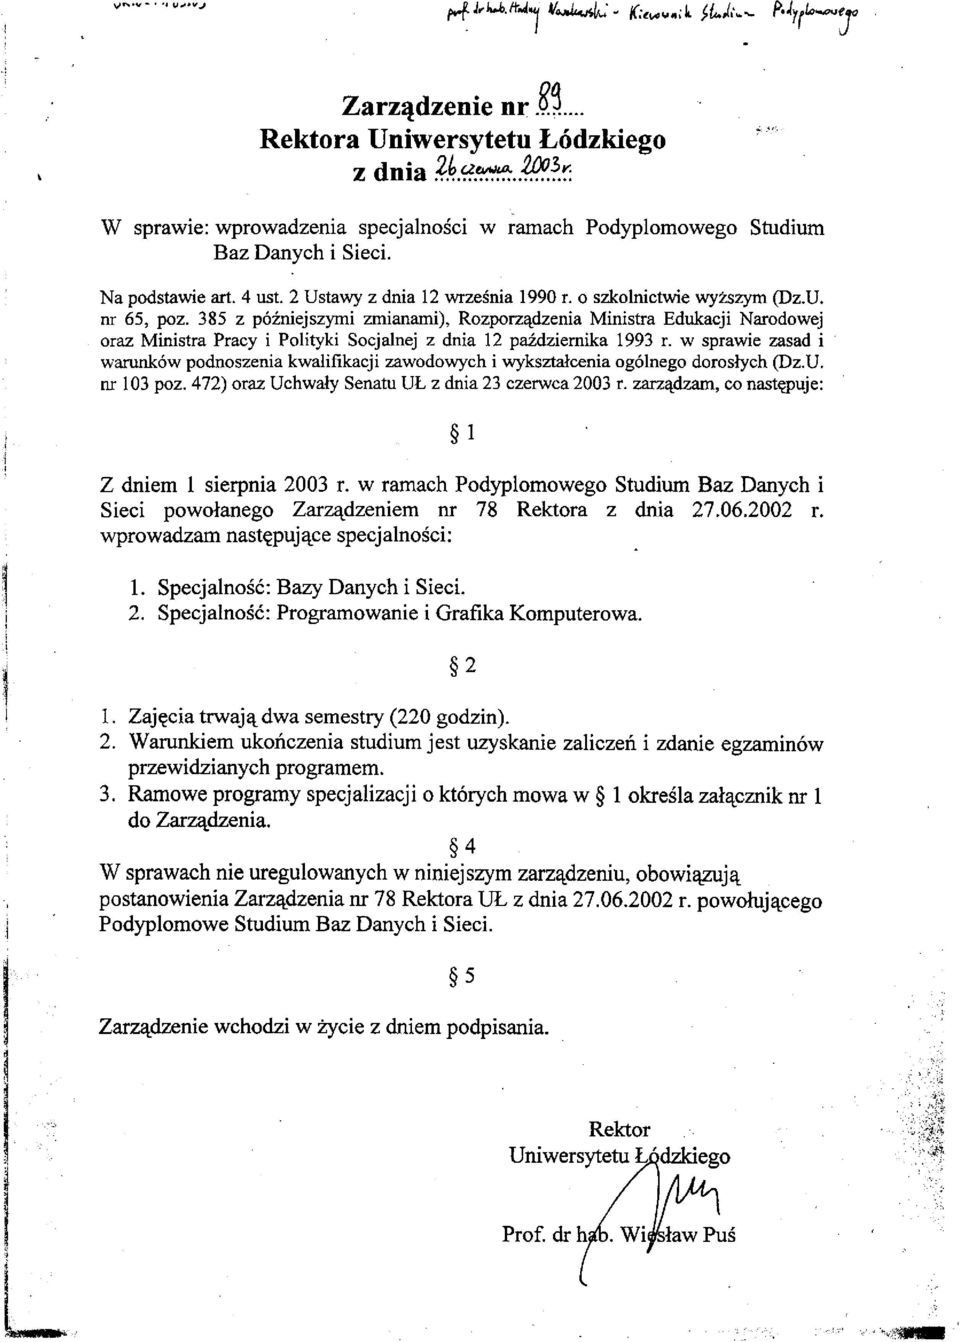 Rozporządzenia Ministra Edukacji Narodowej oraz Ministra Pracy i Polityki Socjalnej z dnia 12 października 1993 r.